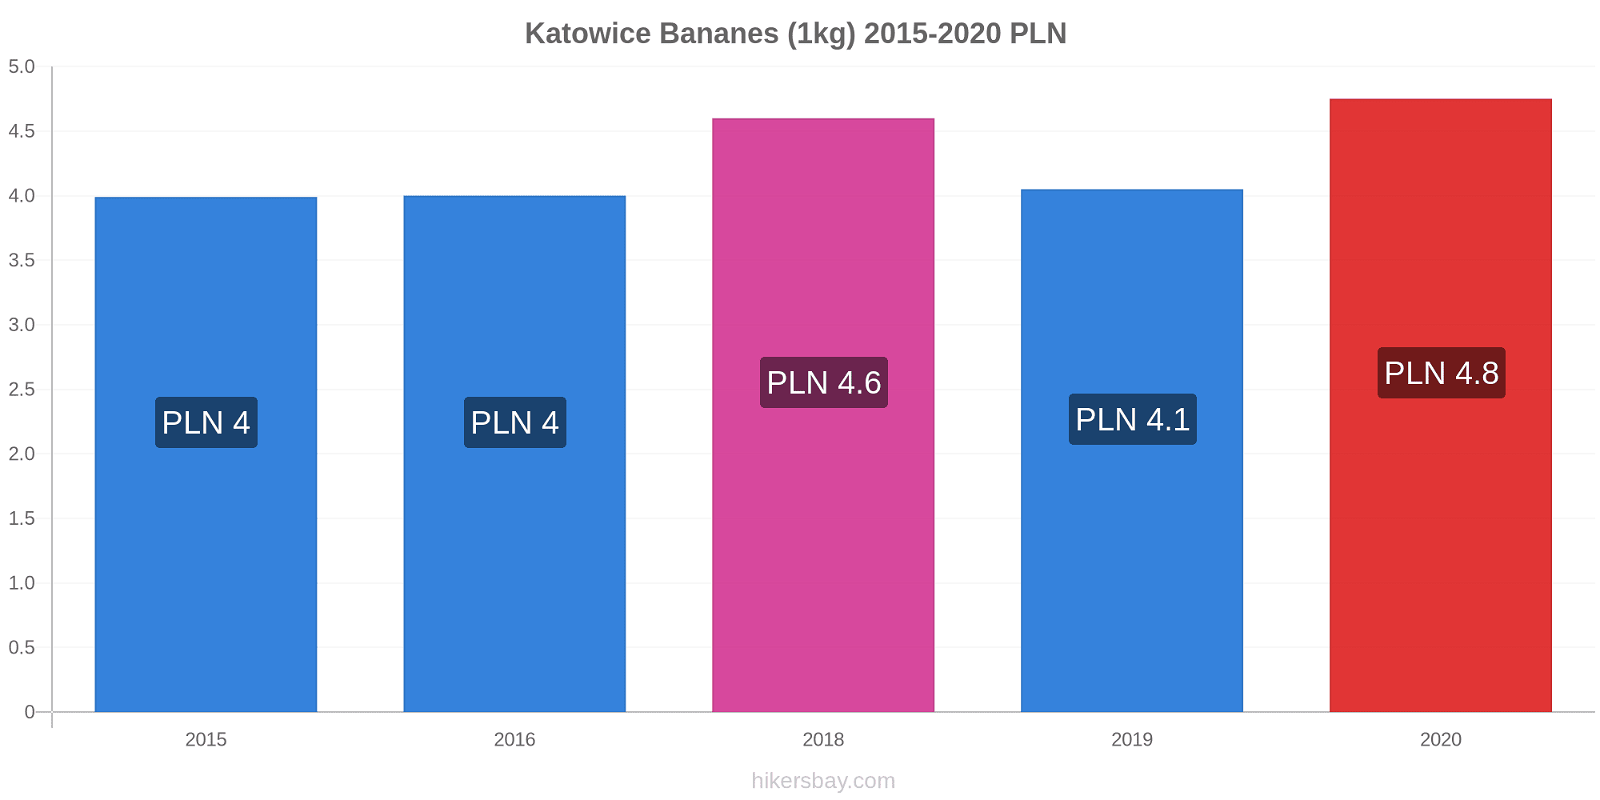 Katowice changements de prix Bananes (1kg) hikersbay.com